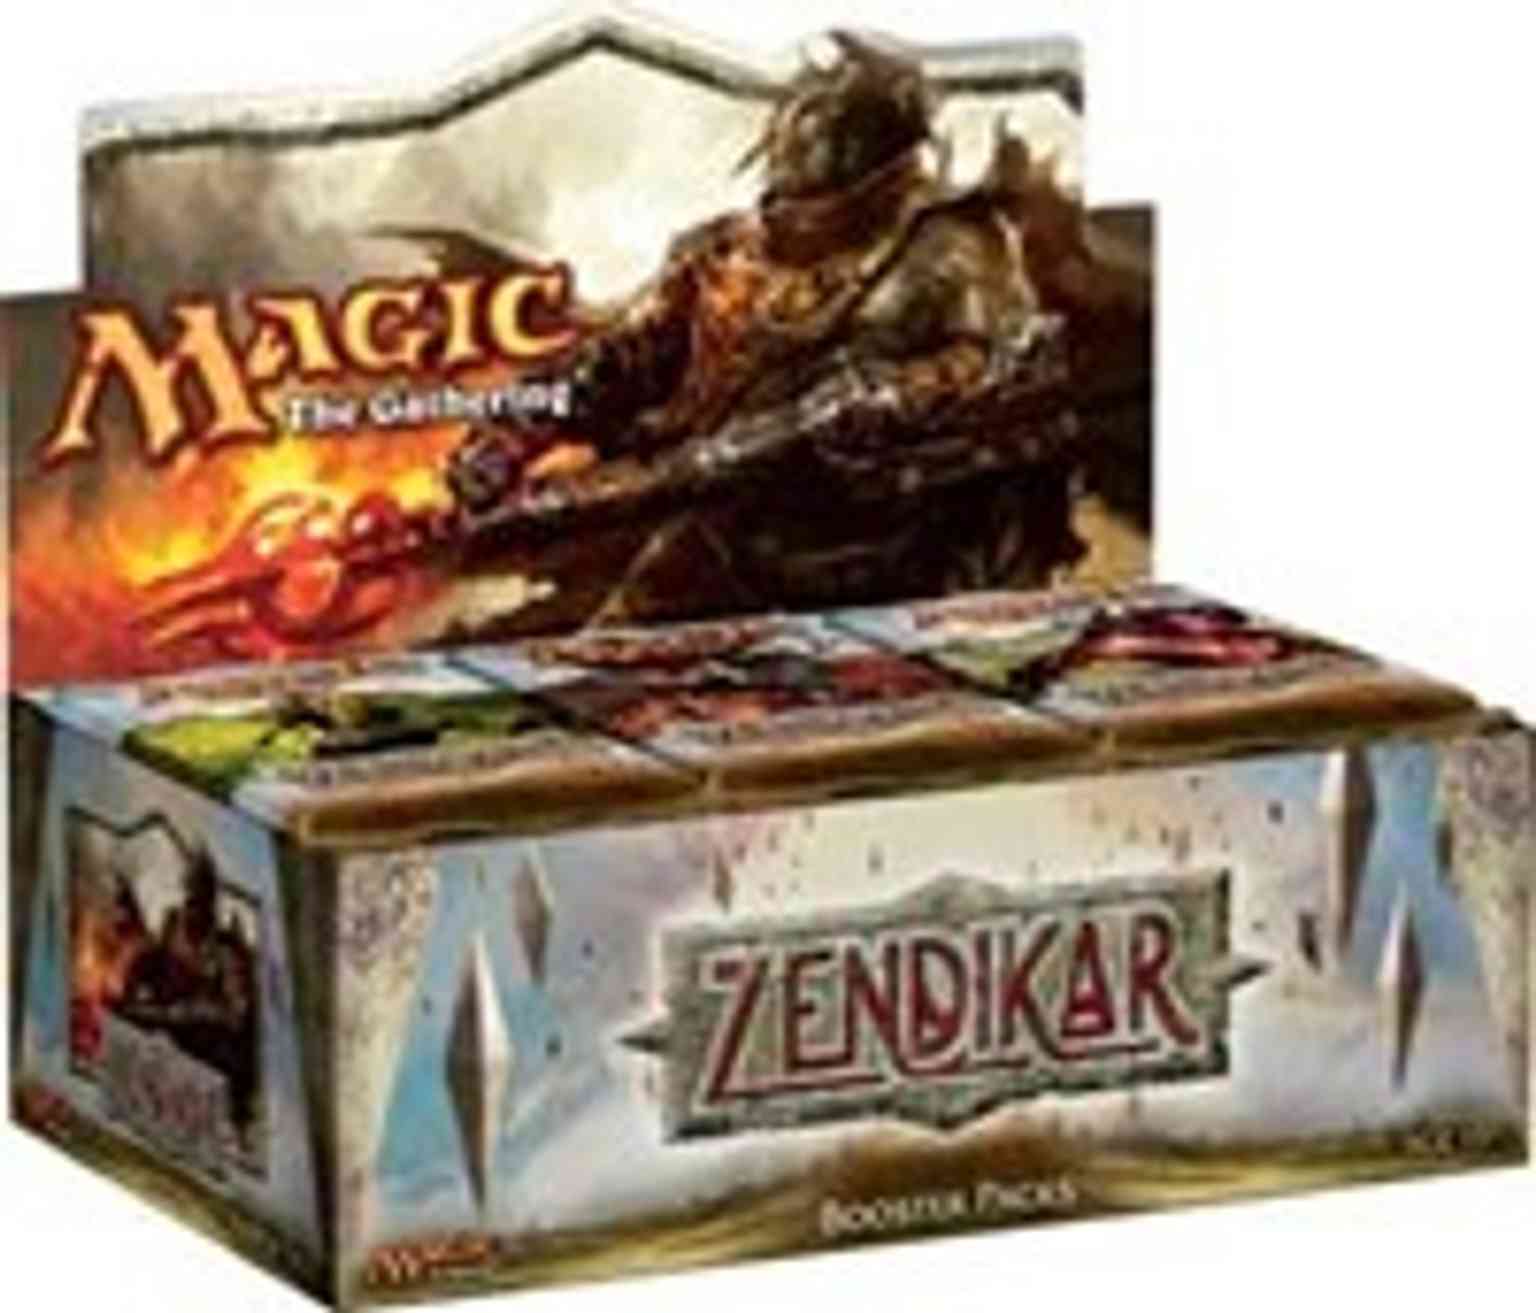 Zendikar - Booster Box magic card front